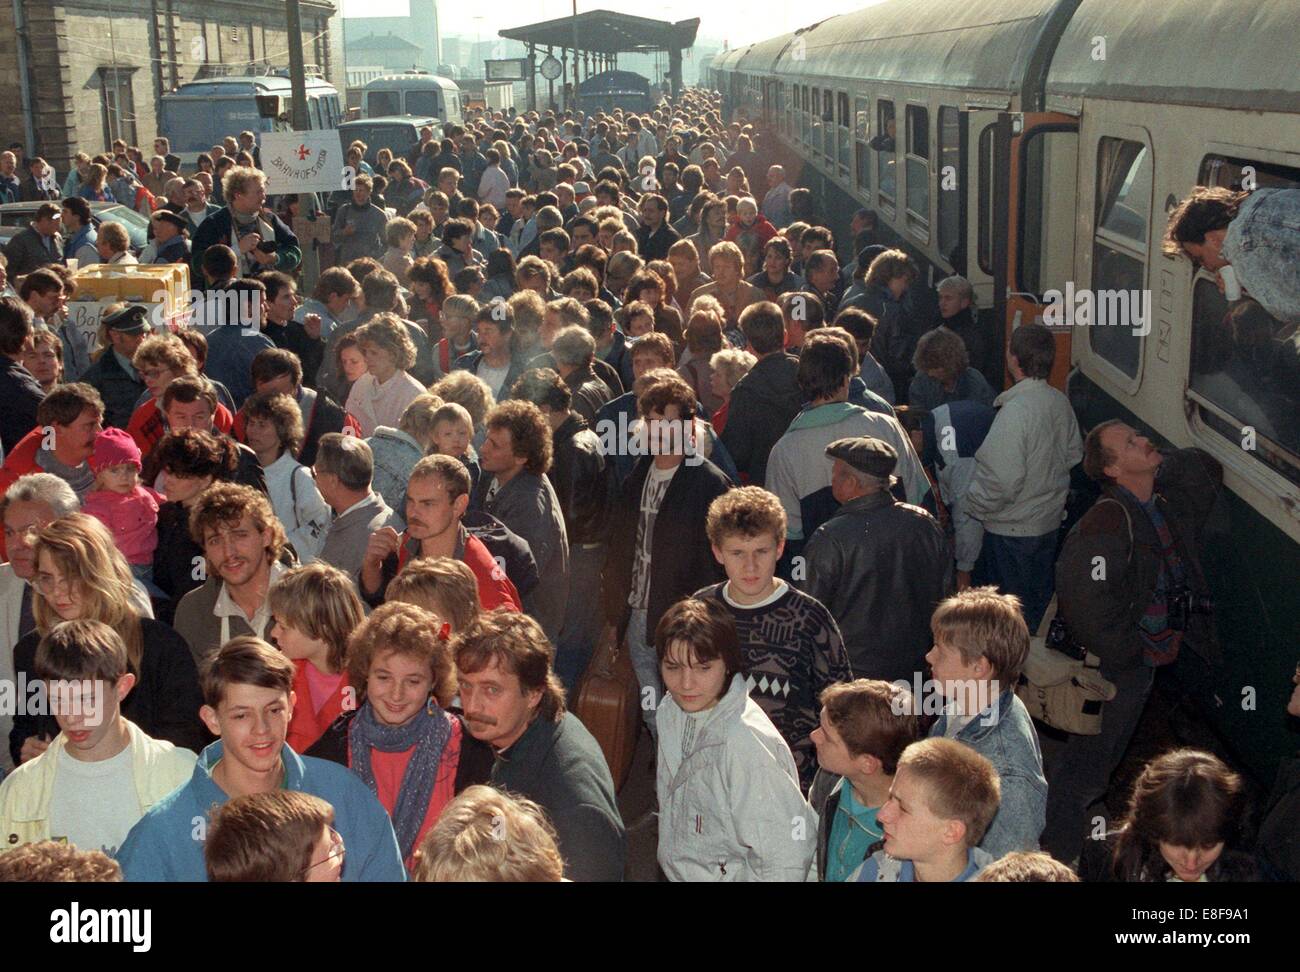 Rdt rifugiati arrivano alla stazione ferroviaria di Hof, Germania, 05 ottobre 1989. Essi avevano occupato la Federal ambasciata tedesca in Cecoslovacchia a Praga e sono stati concessi premission ad emigrare dalle autorità di GRD che in conseguenza finale ha portato alla caduta del muro e la riunificazione delle due Germanie. Foto Stock